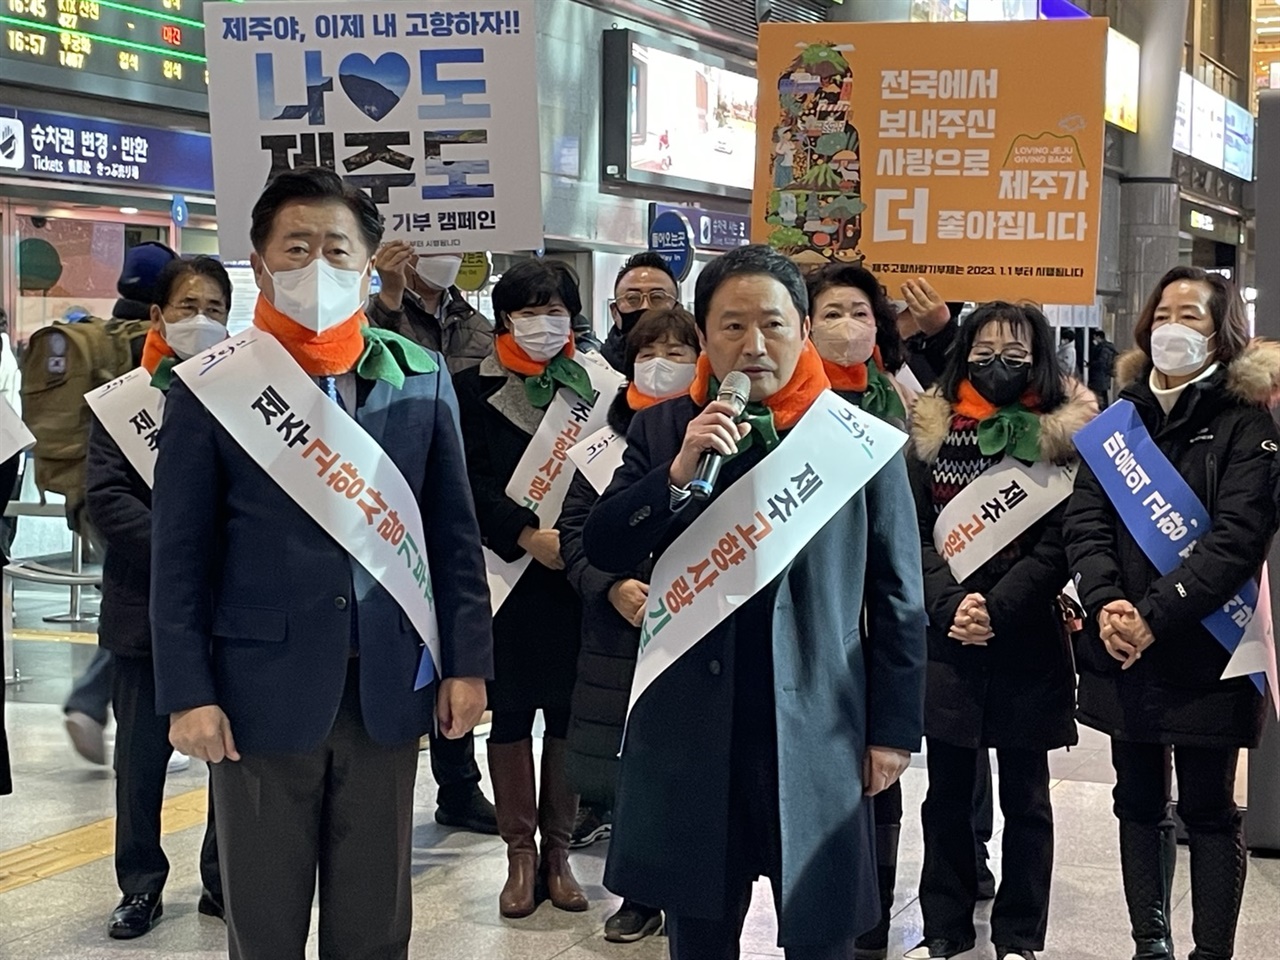 고향사랑기부제 홍보행사에 참여하여 인사말을 하는 허능필 서울제주도민회 회장